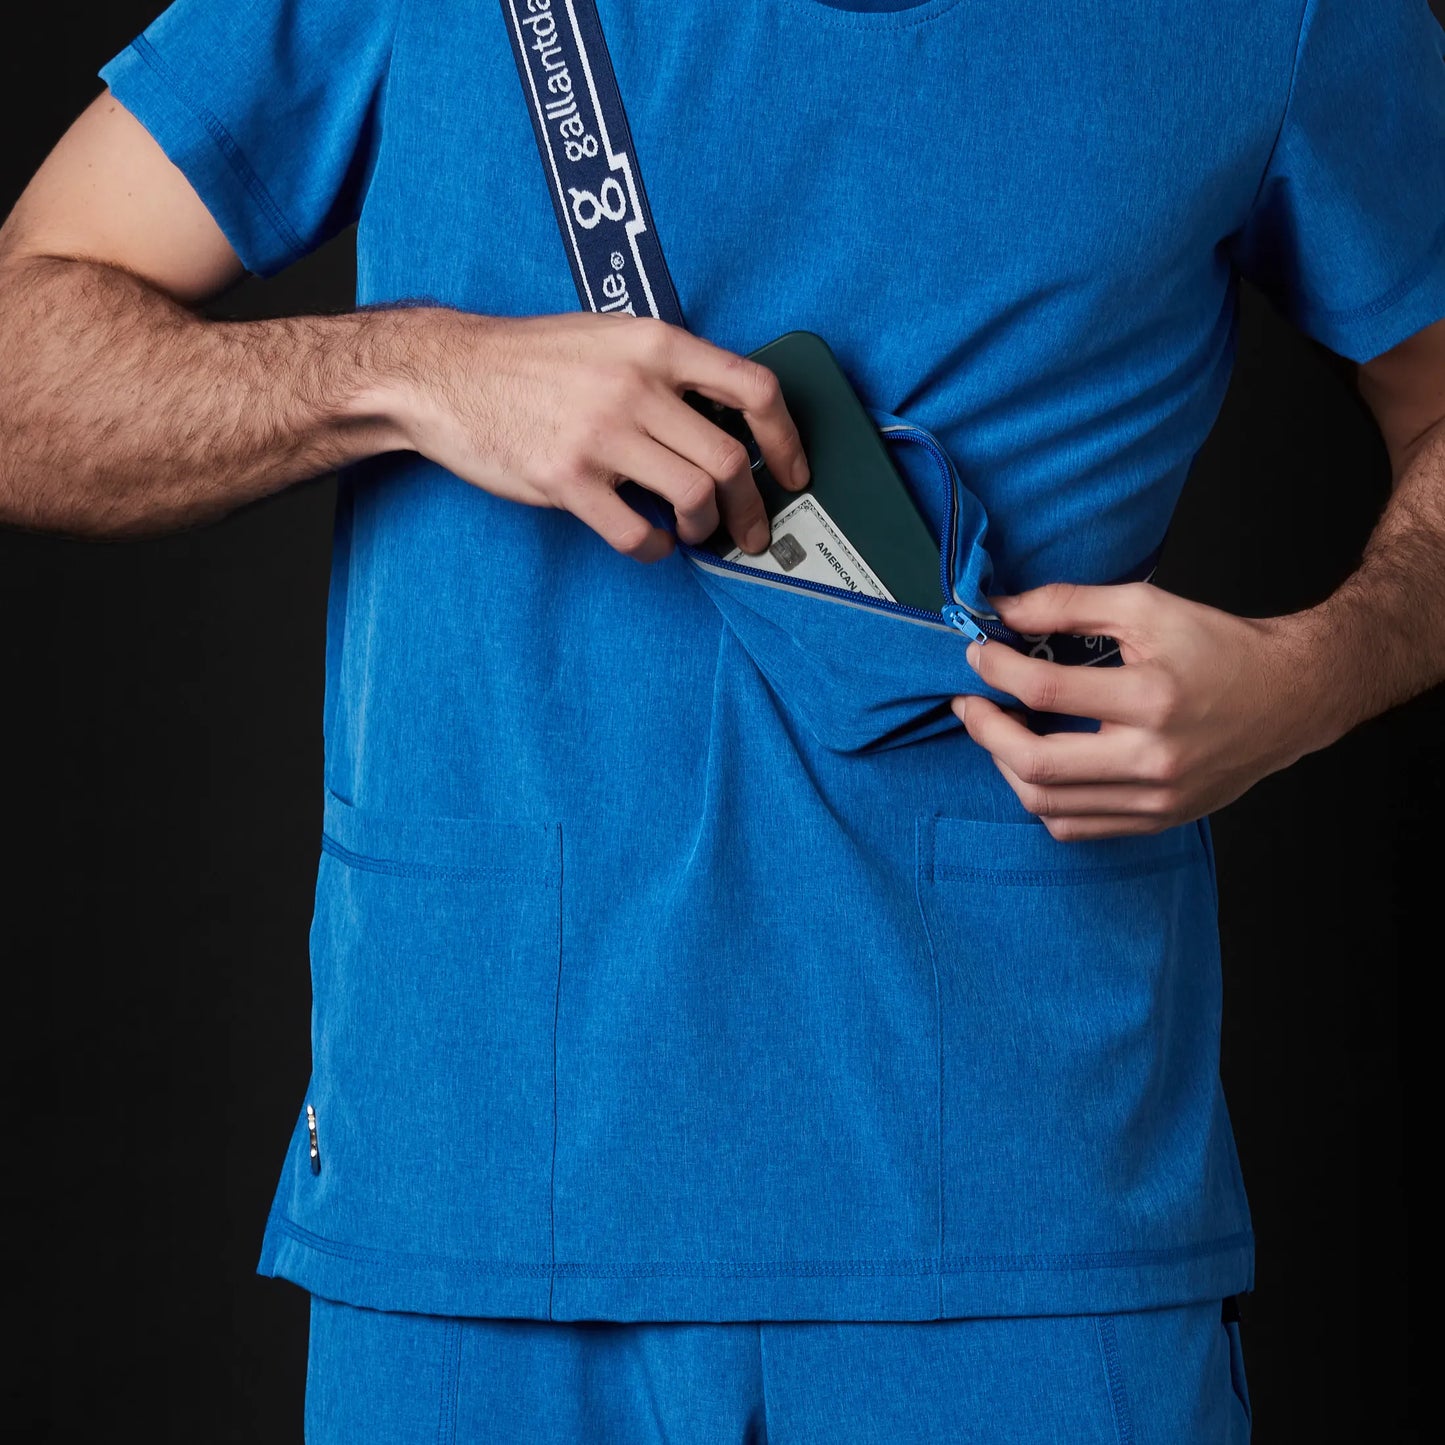 Médico o Doctor vistiendo una BOLSA cangurera color azul marca Gallantdale Uniformes Médicos y Quirúrgicos